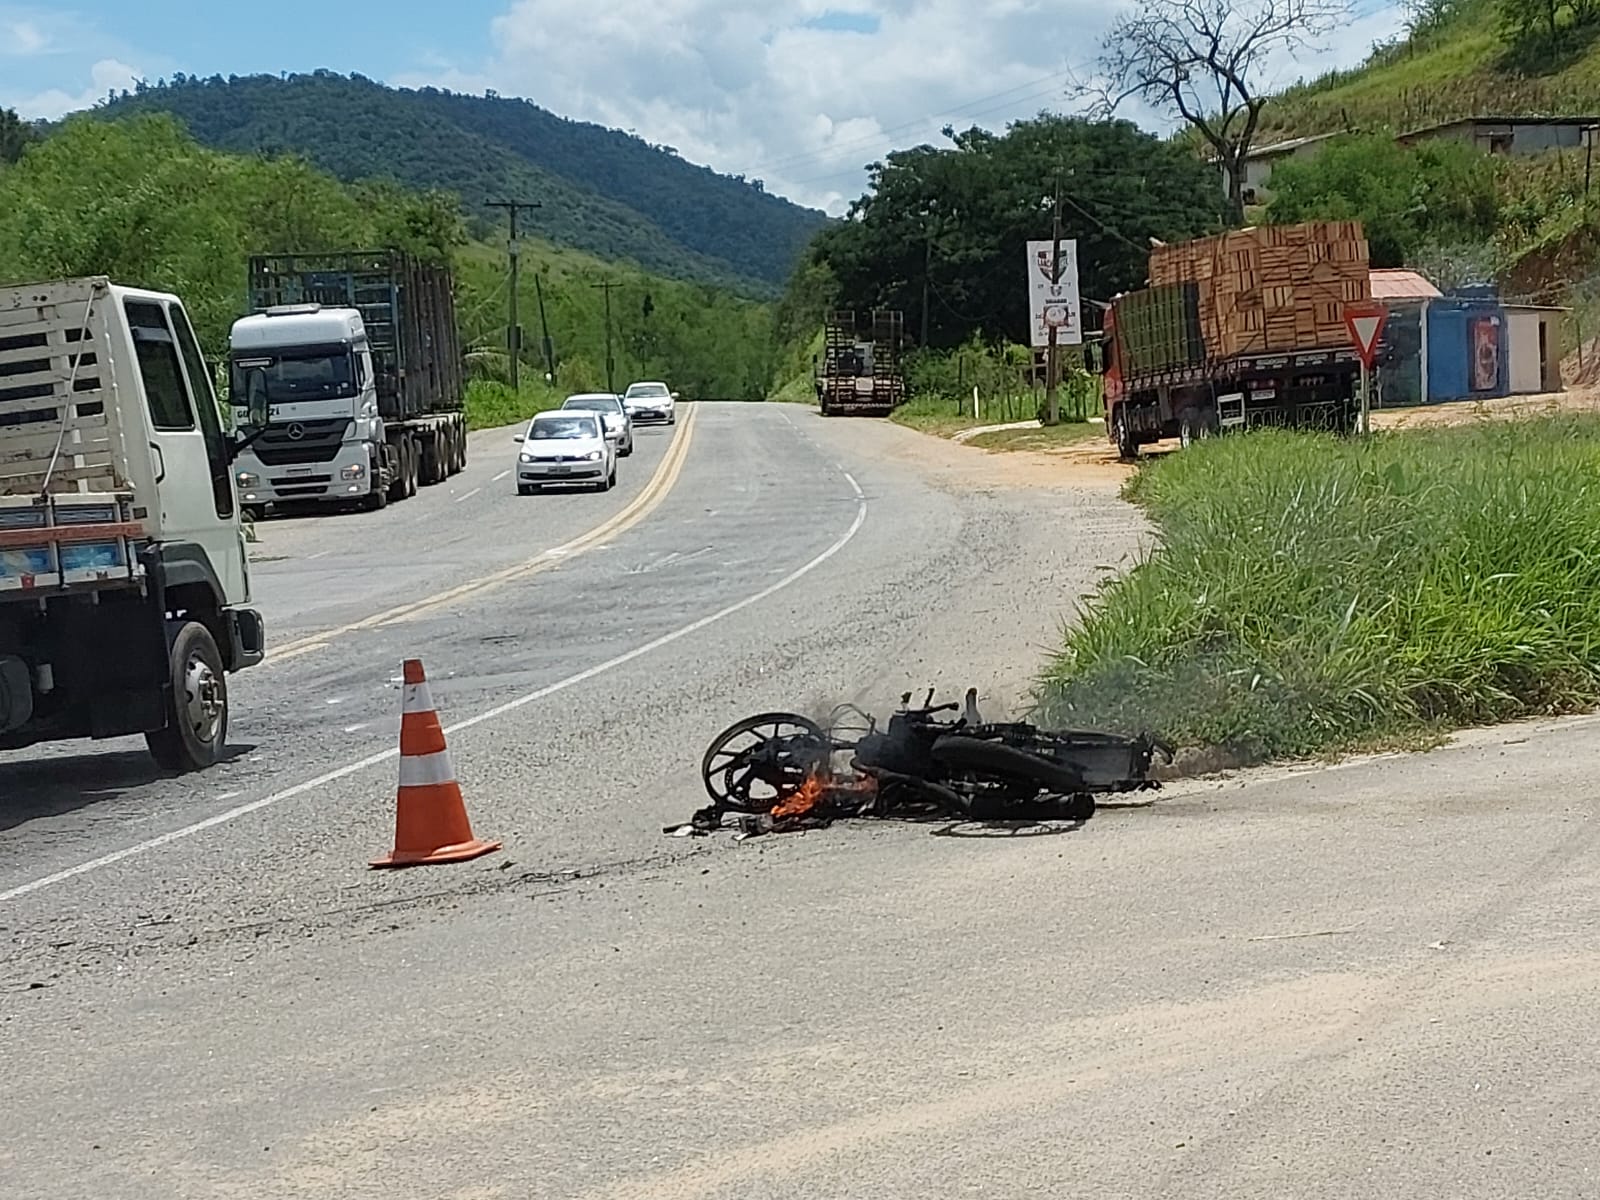 Sérgio de Assis Martins, de 54 anos, morreu no local do acidente, que ocorreu por volta de 11h desta quinta (9); a moto que ele pilotava foi arrastada pelo caminhão e pegou fogo